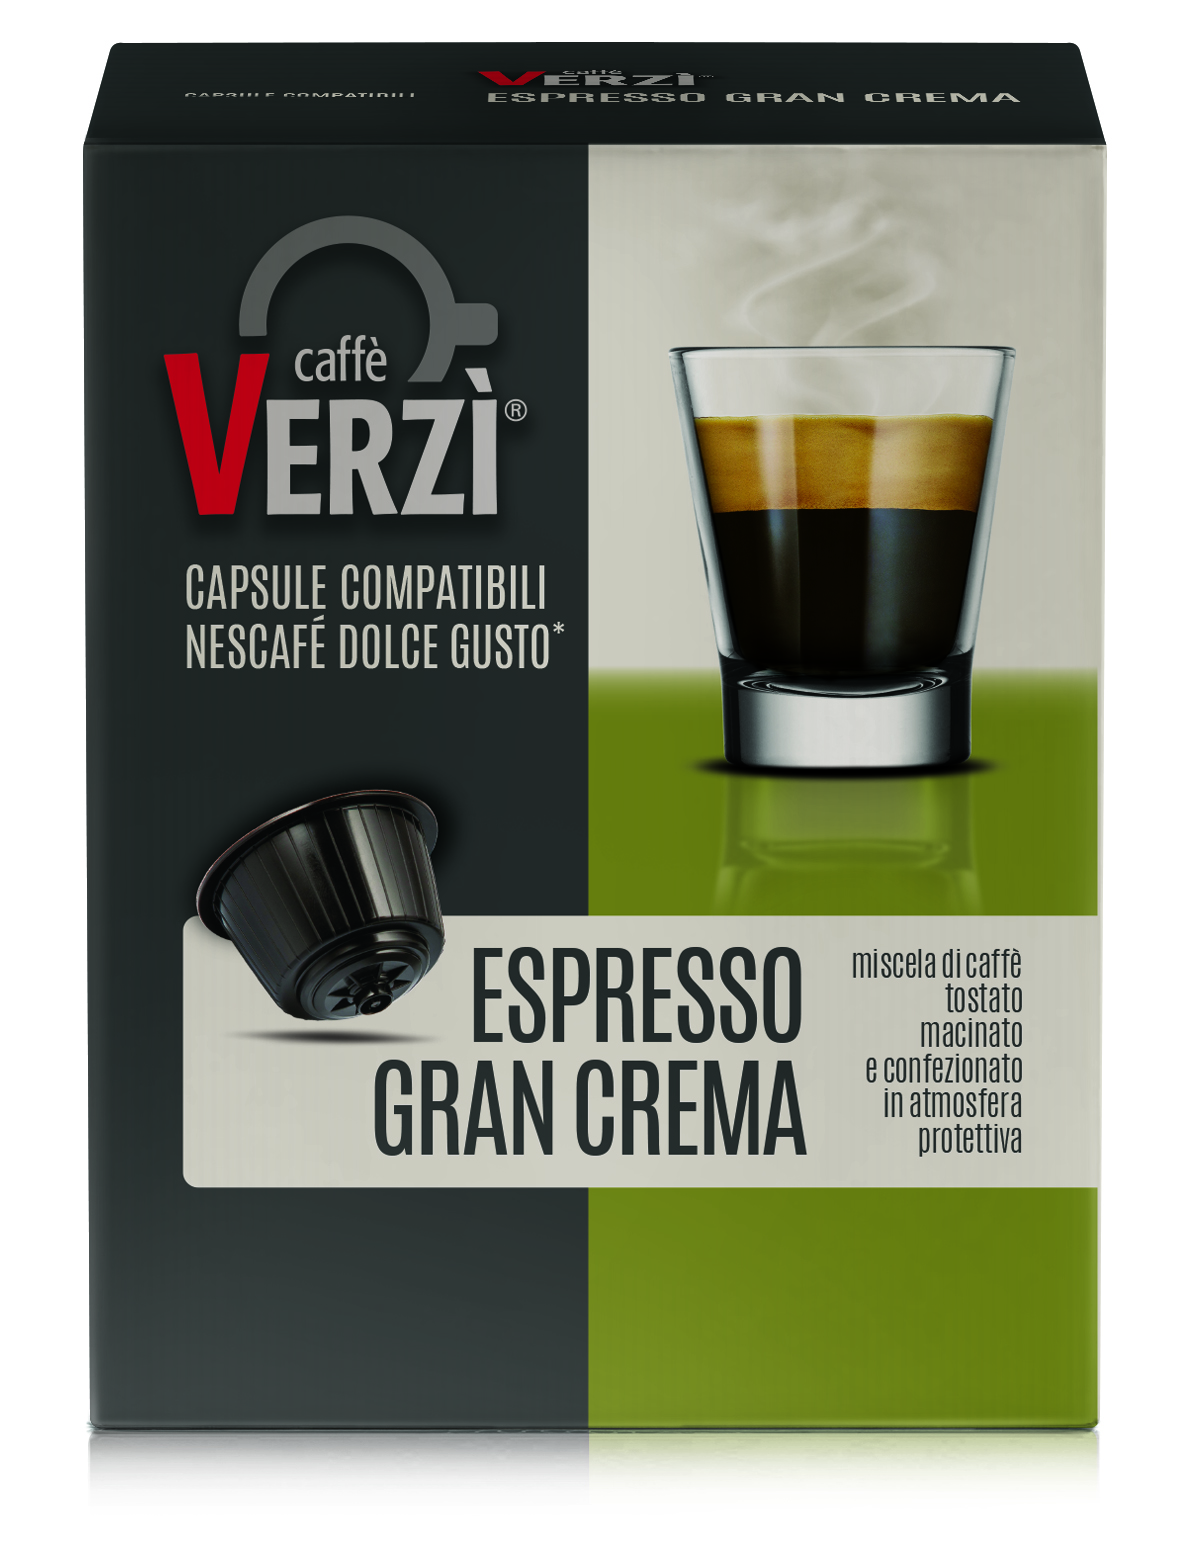 Capsule Compatibili Nescafè Dolce Gusto - Espresso Gran Crema - Verzì Caffè